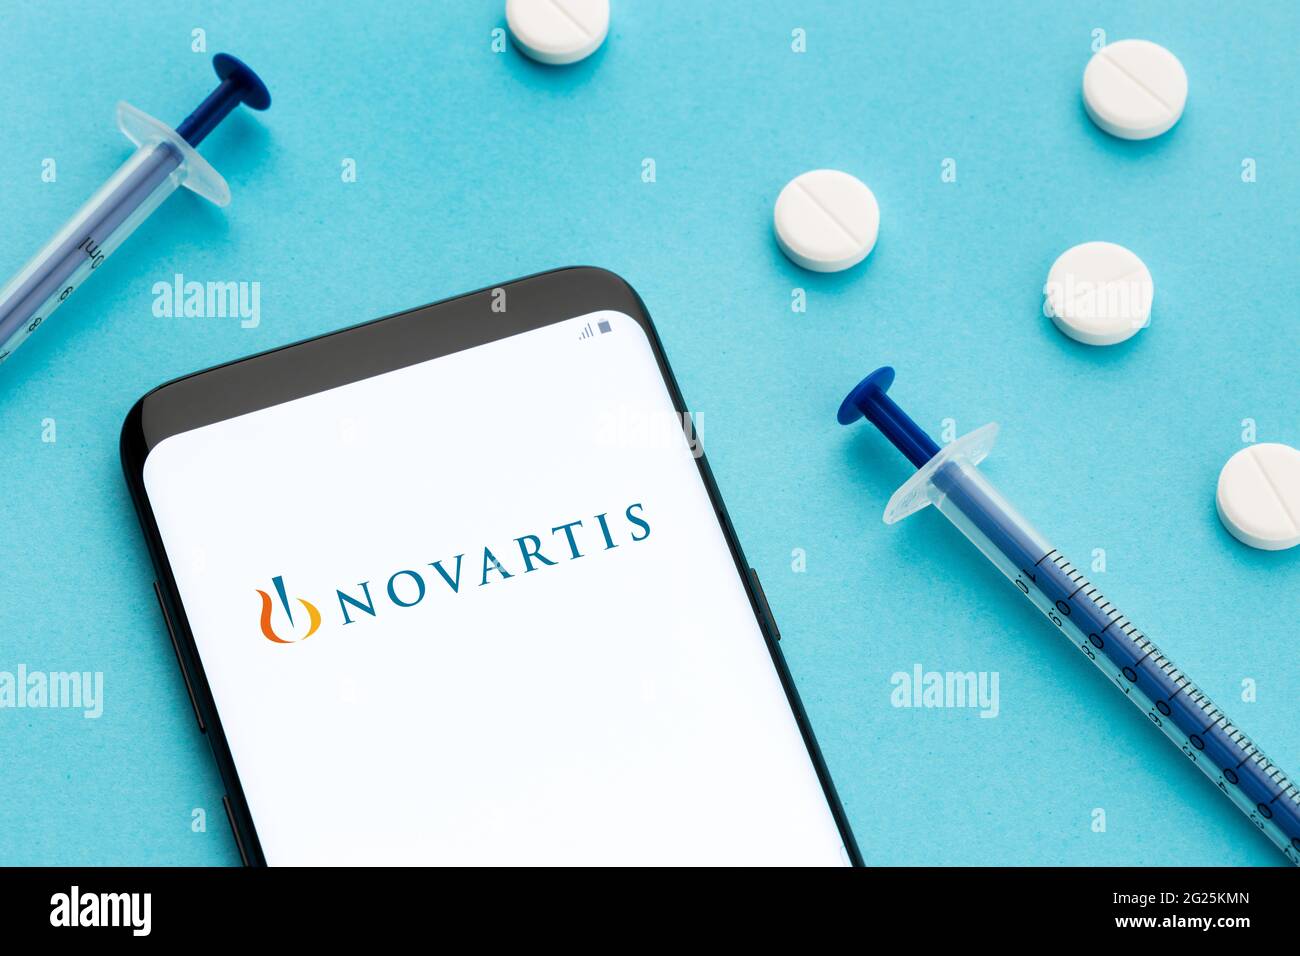 Galizia, Spagna; 8 Giugno 2020 : smartphone con logo Novartis sullo schermo e pillole e siringa su sfondo blu Foto Stock